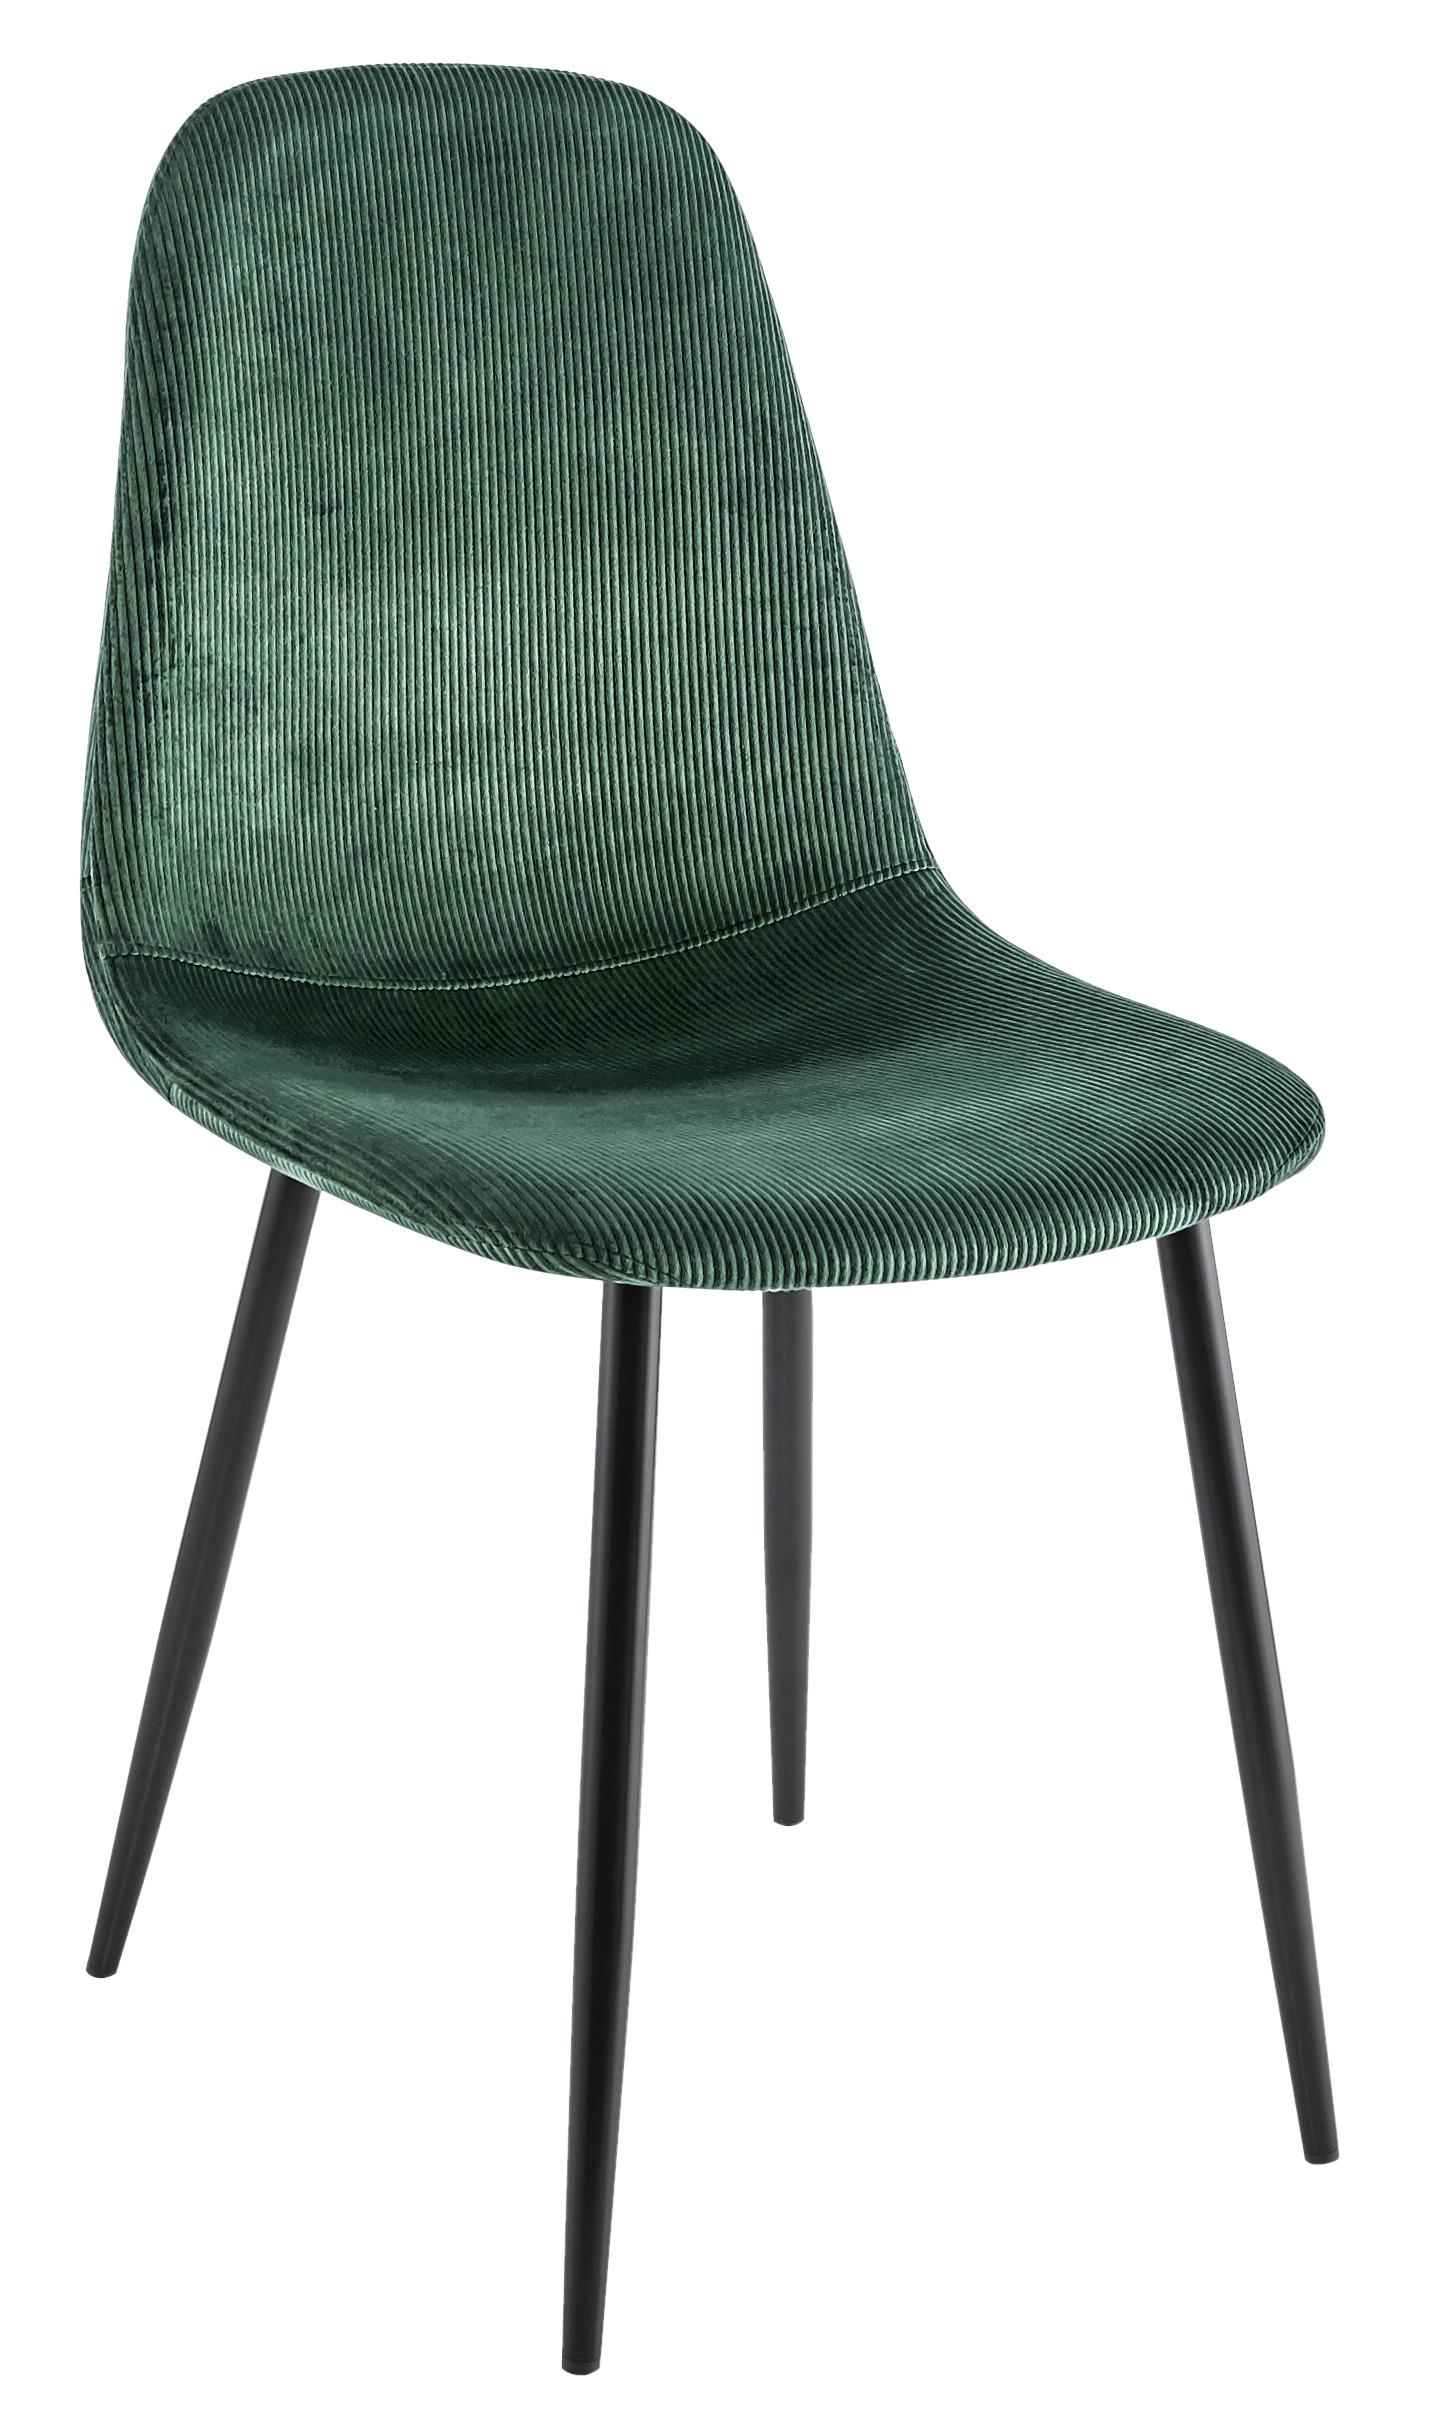 Stolička Cordula - čierna/zelená, Moderný, kov/textil (44,5/86,5/54cm) - Modern Living